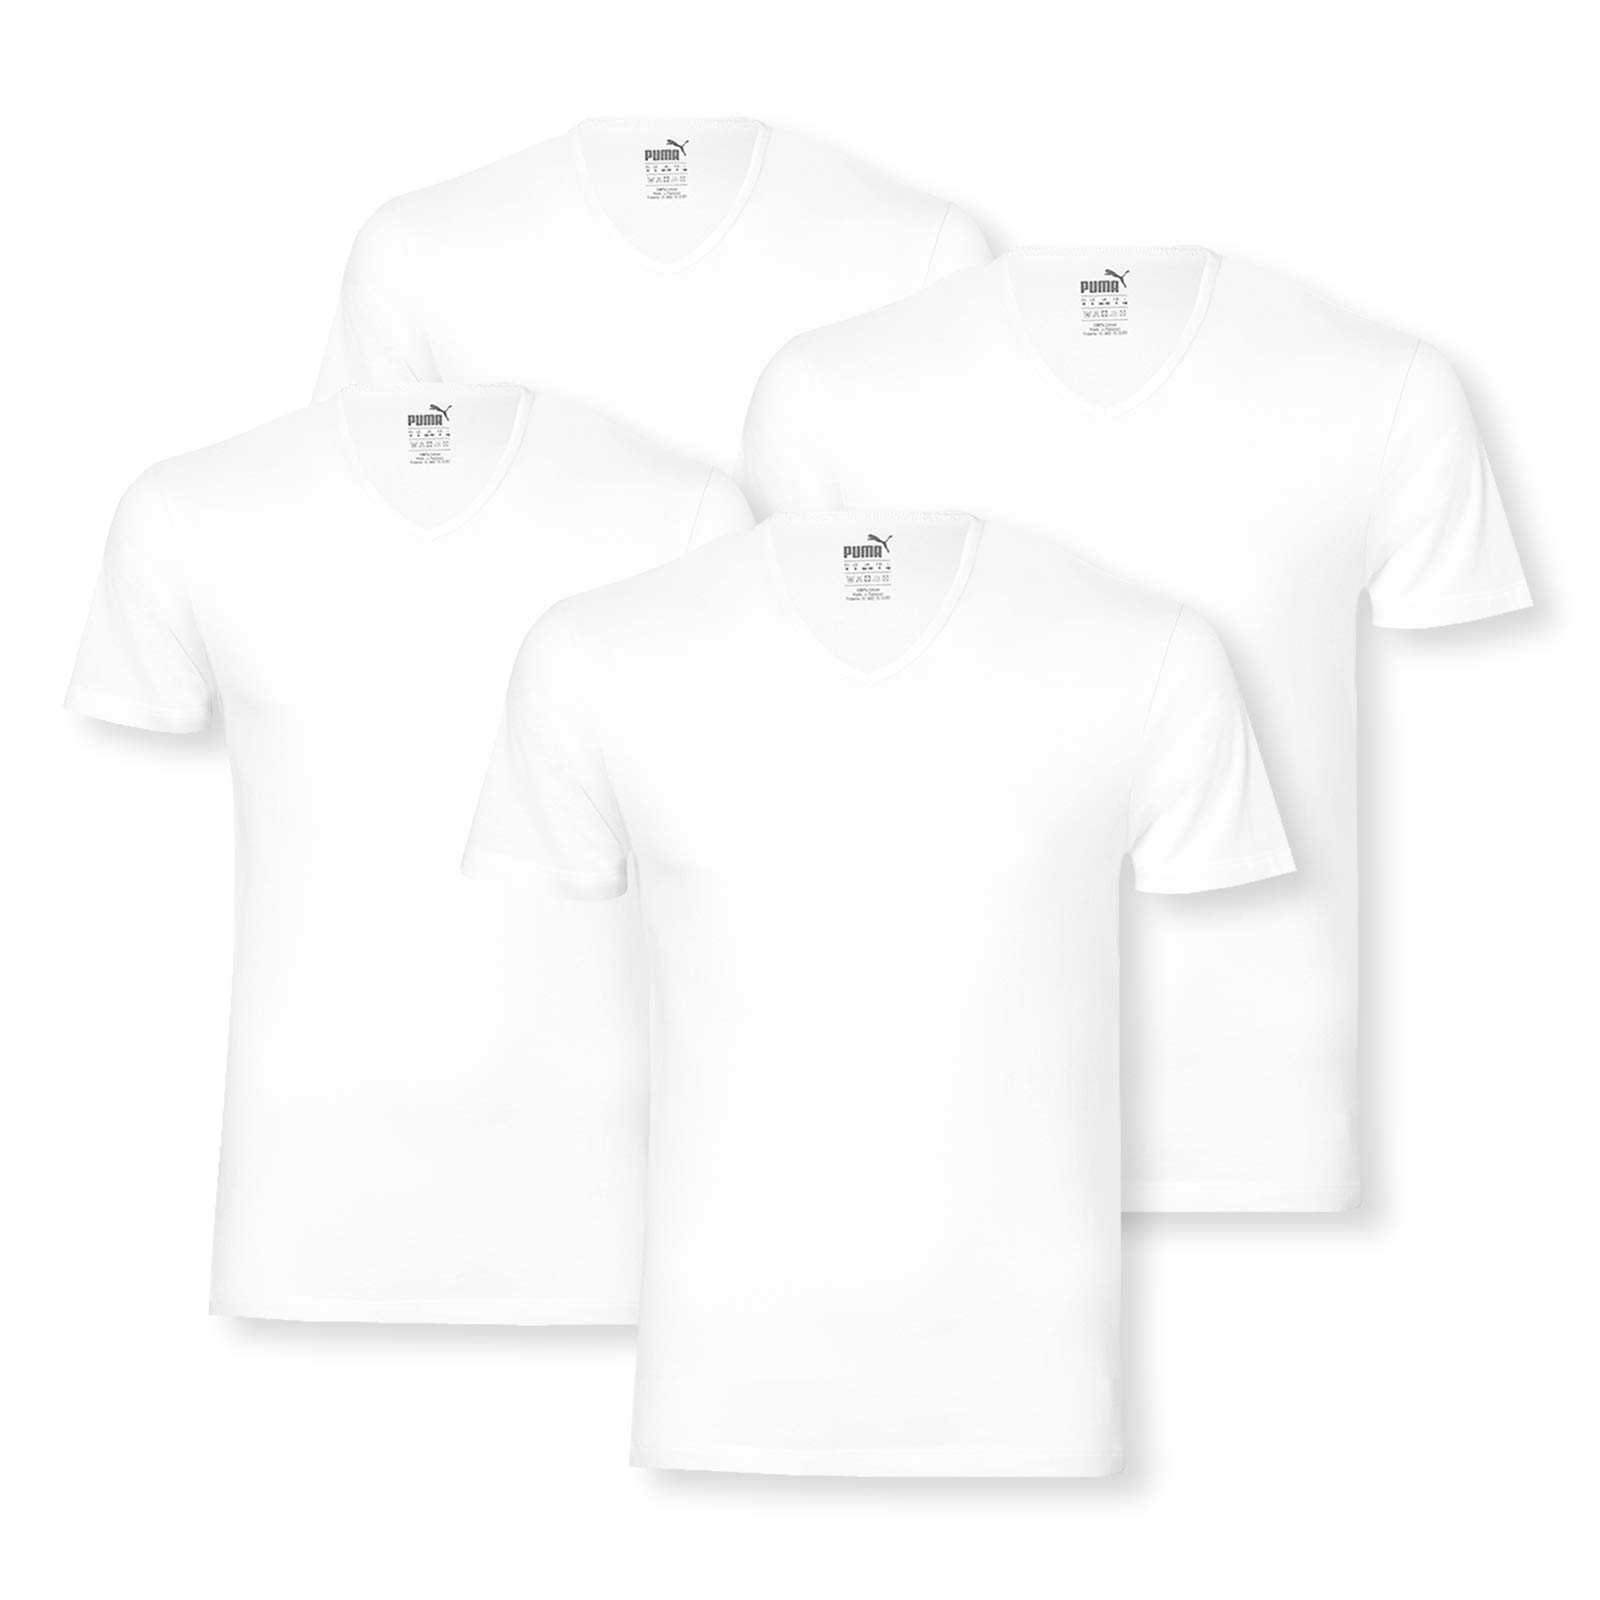 PUMA 4 er Pack Basic V Neck T-Shirt Men Herren Unterhemd V-Ausschnitt, Farbe:300 - White, Bekleidungsgröße:XL